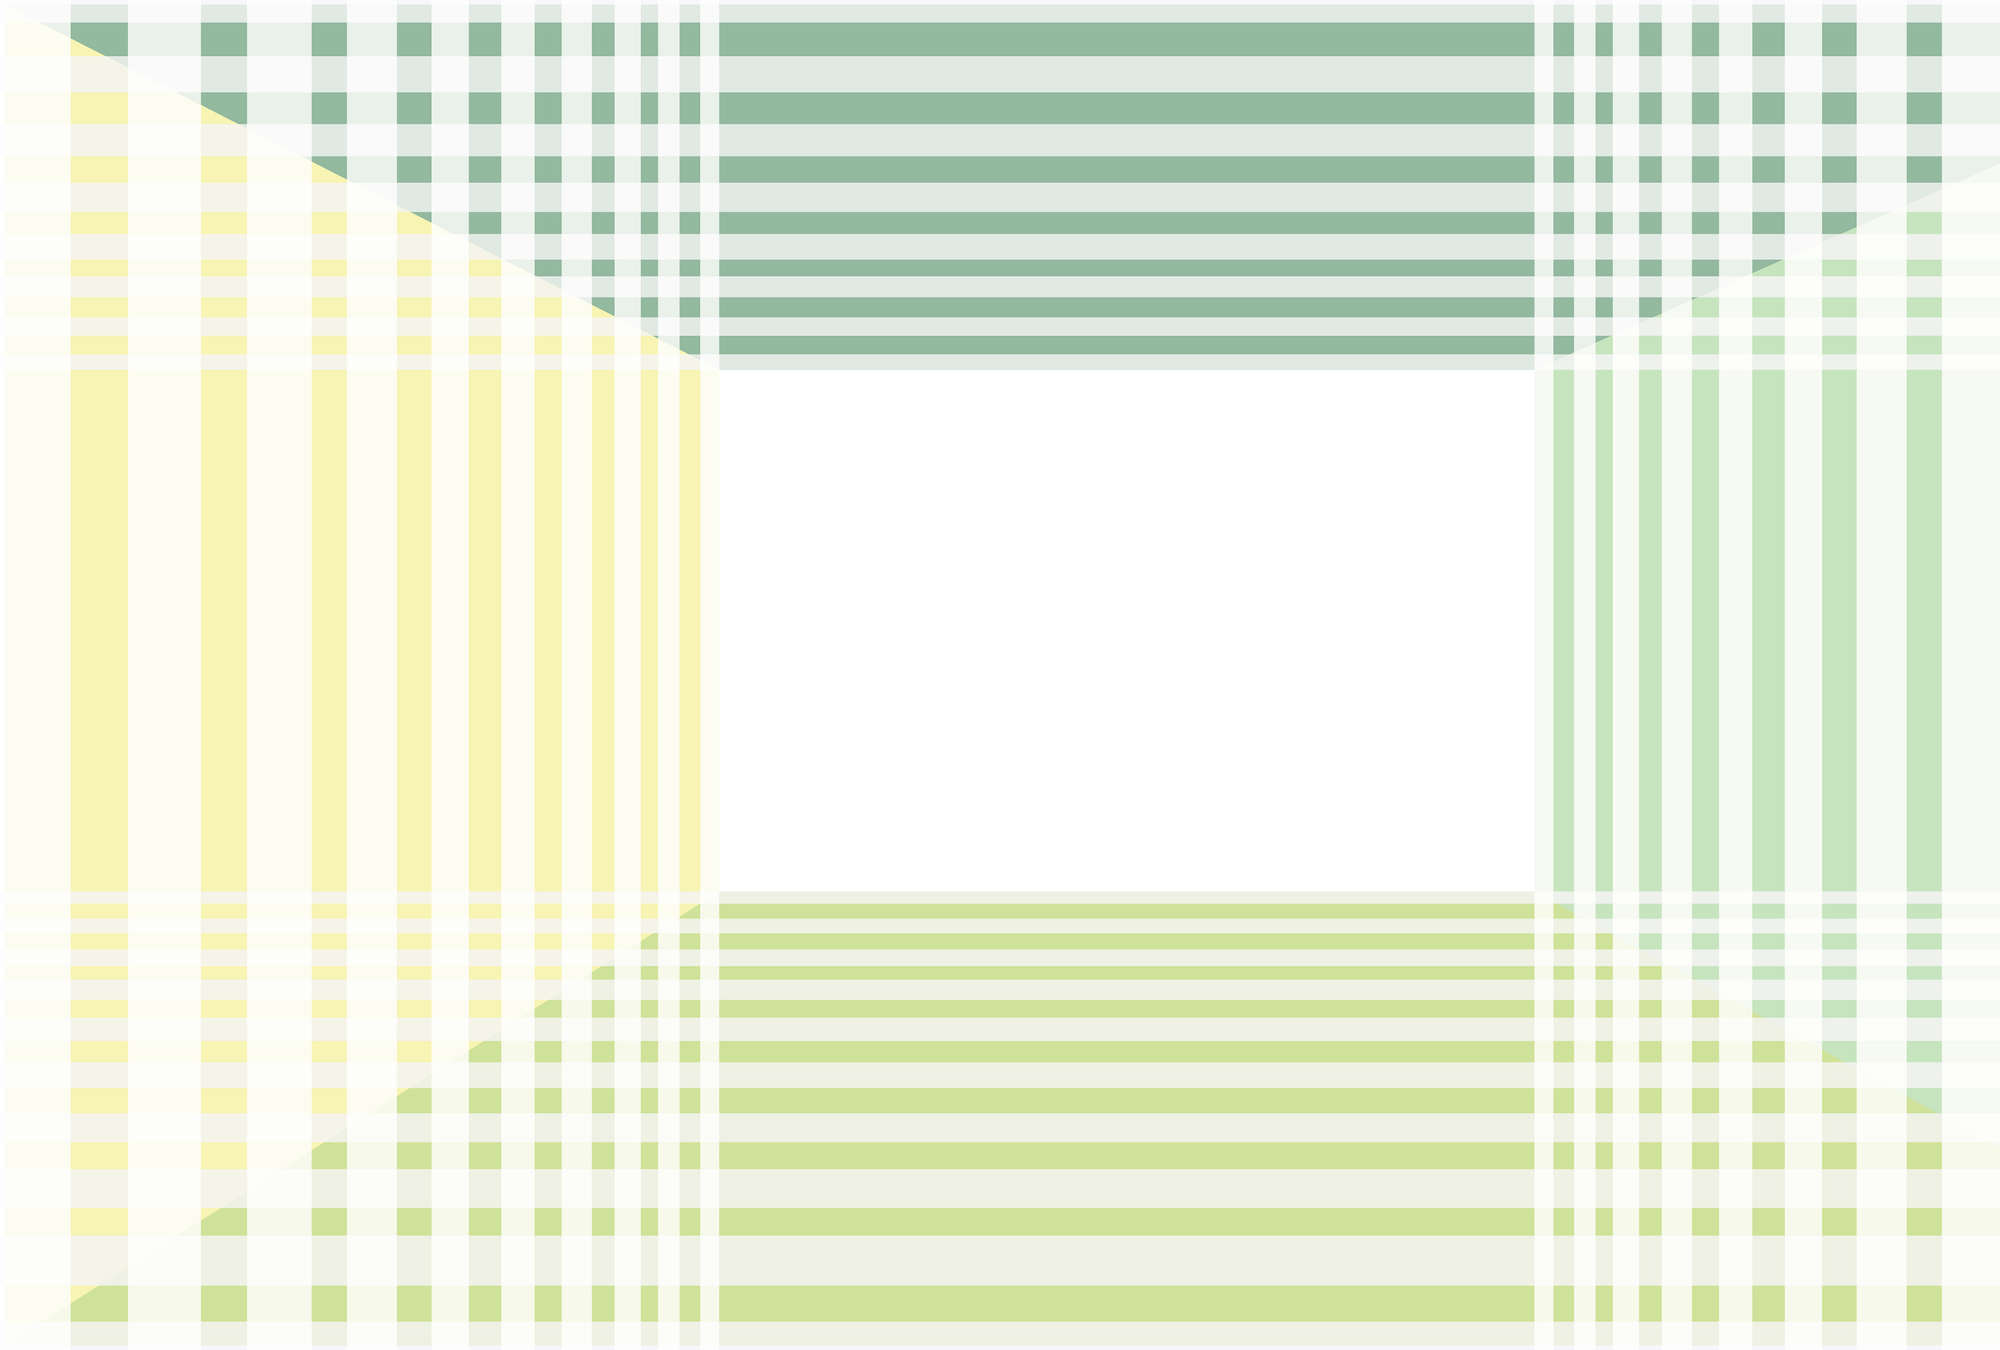             Fototapete mit minimalistischem Streifen-Muster – Grün, Weiß, Gelb
        